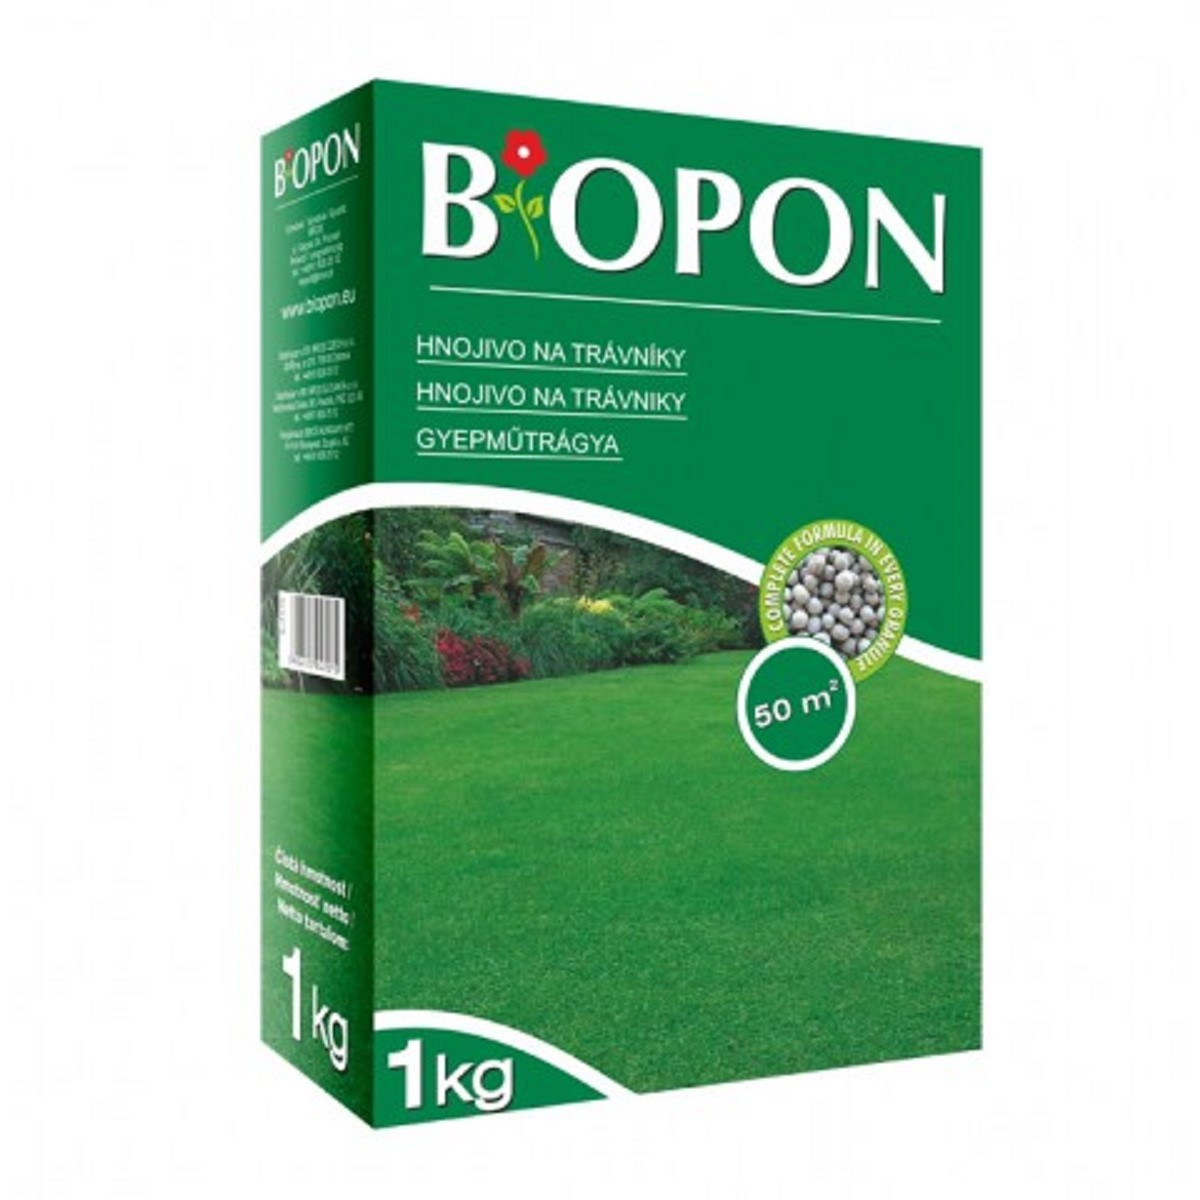 Hnojivo na trávník - Bopon - granulované hnojivo - 1 kg